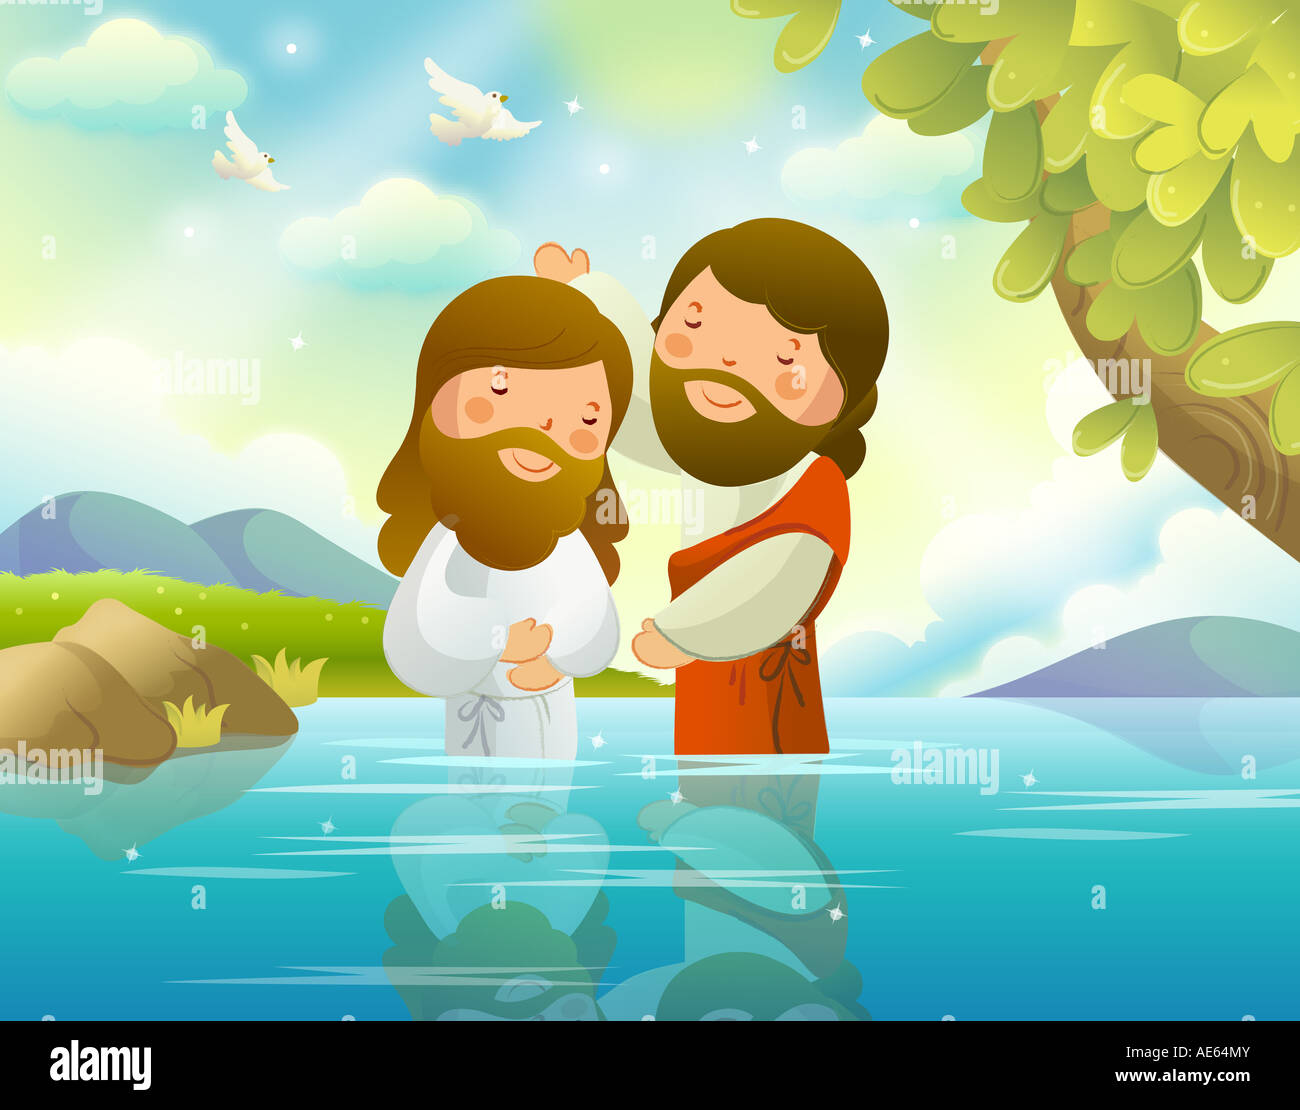 Baptism of Jesus Christ by John the Baptist Stock Photo - Alamy